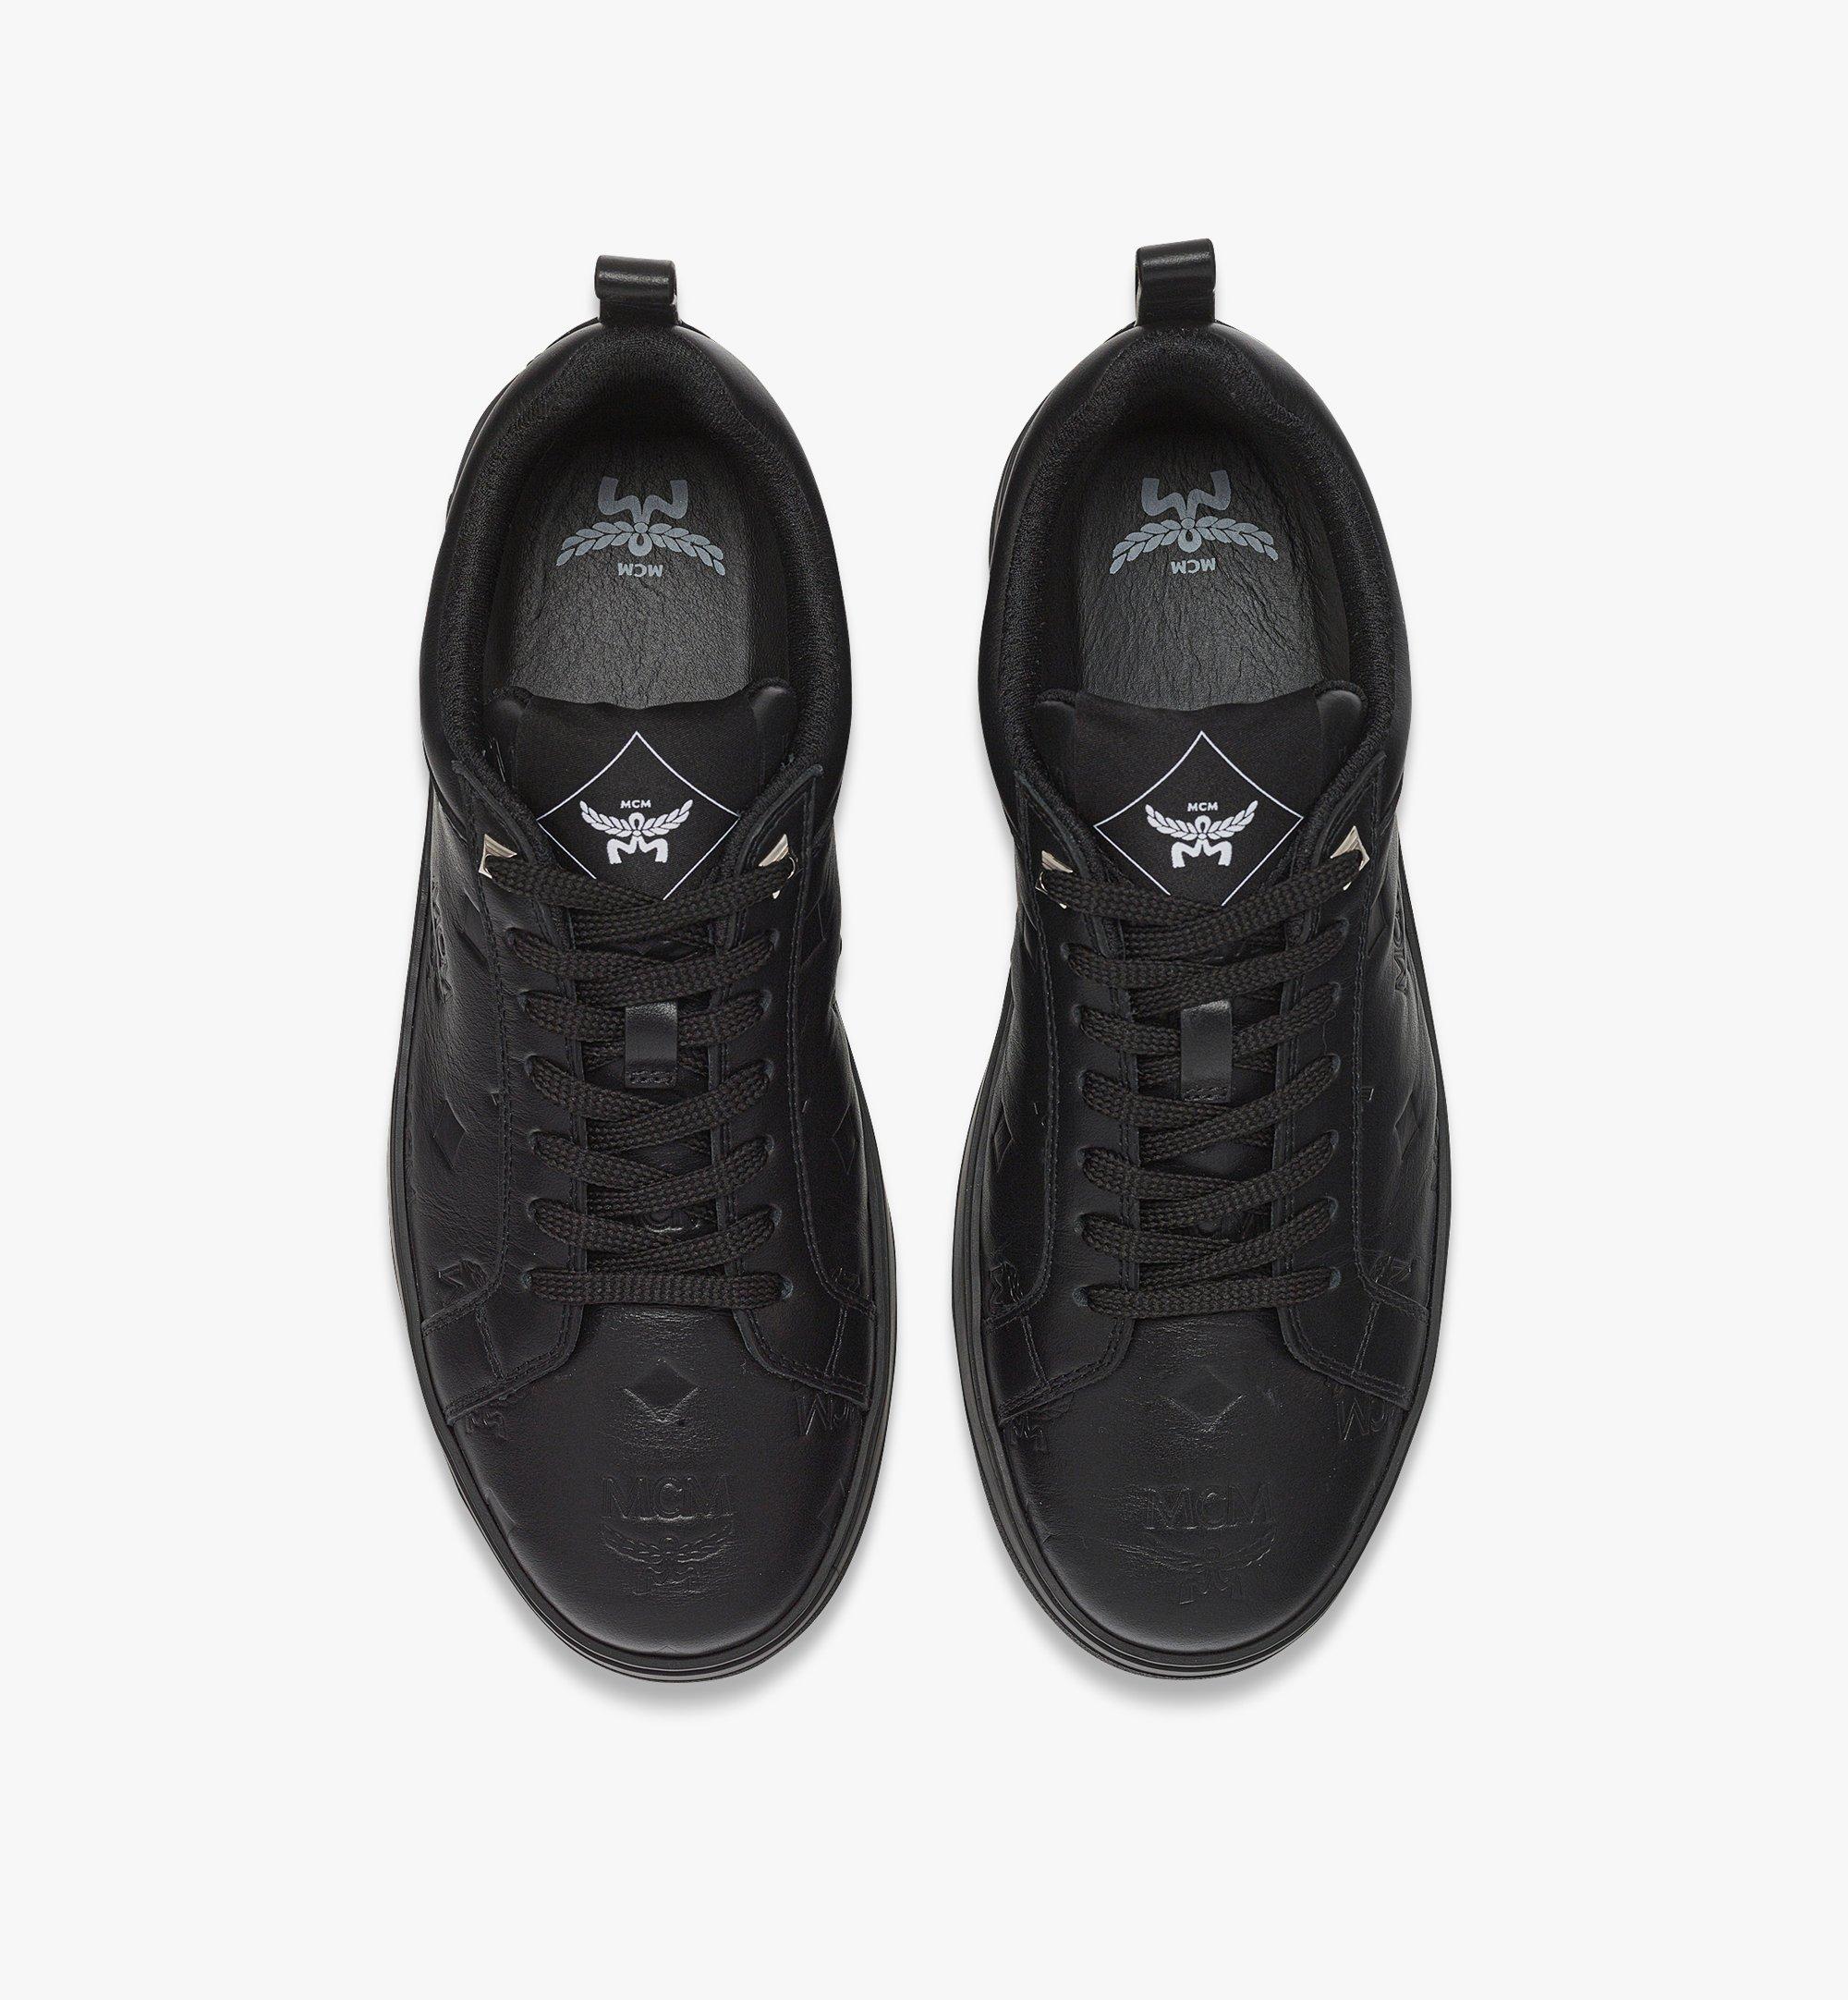 41 IT / M Neo Terrain Lo Sneakers in Monogram Leather Black | MCM ®US